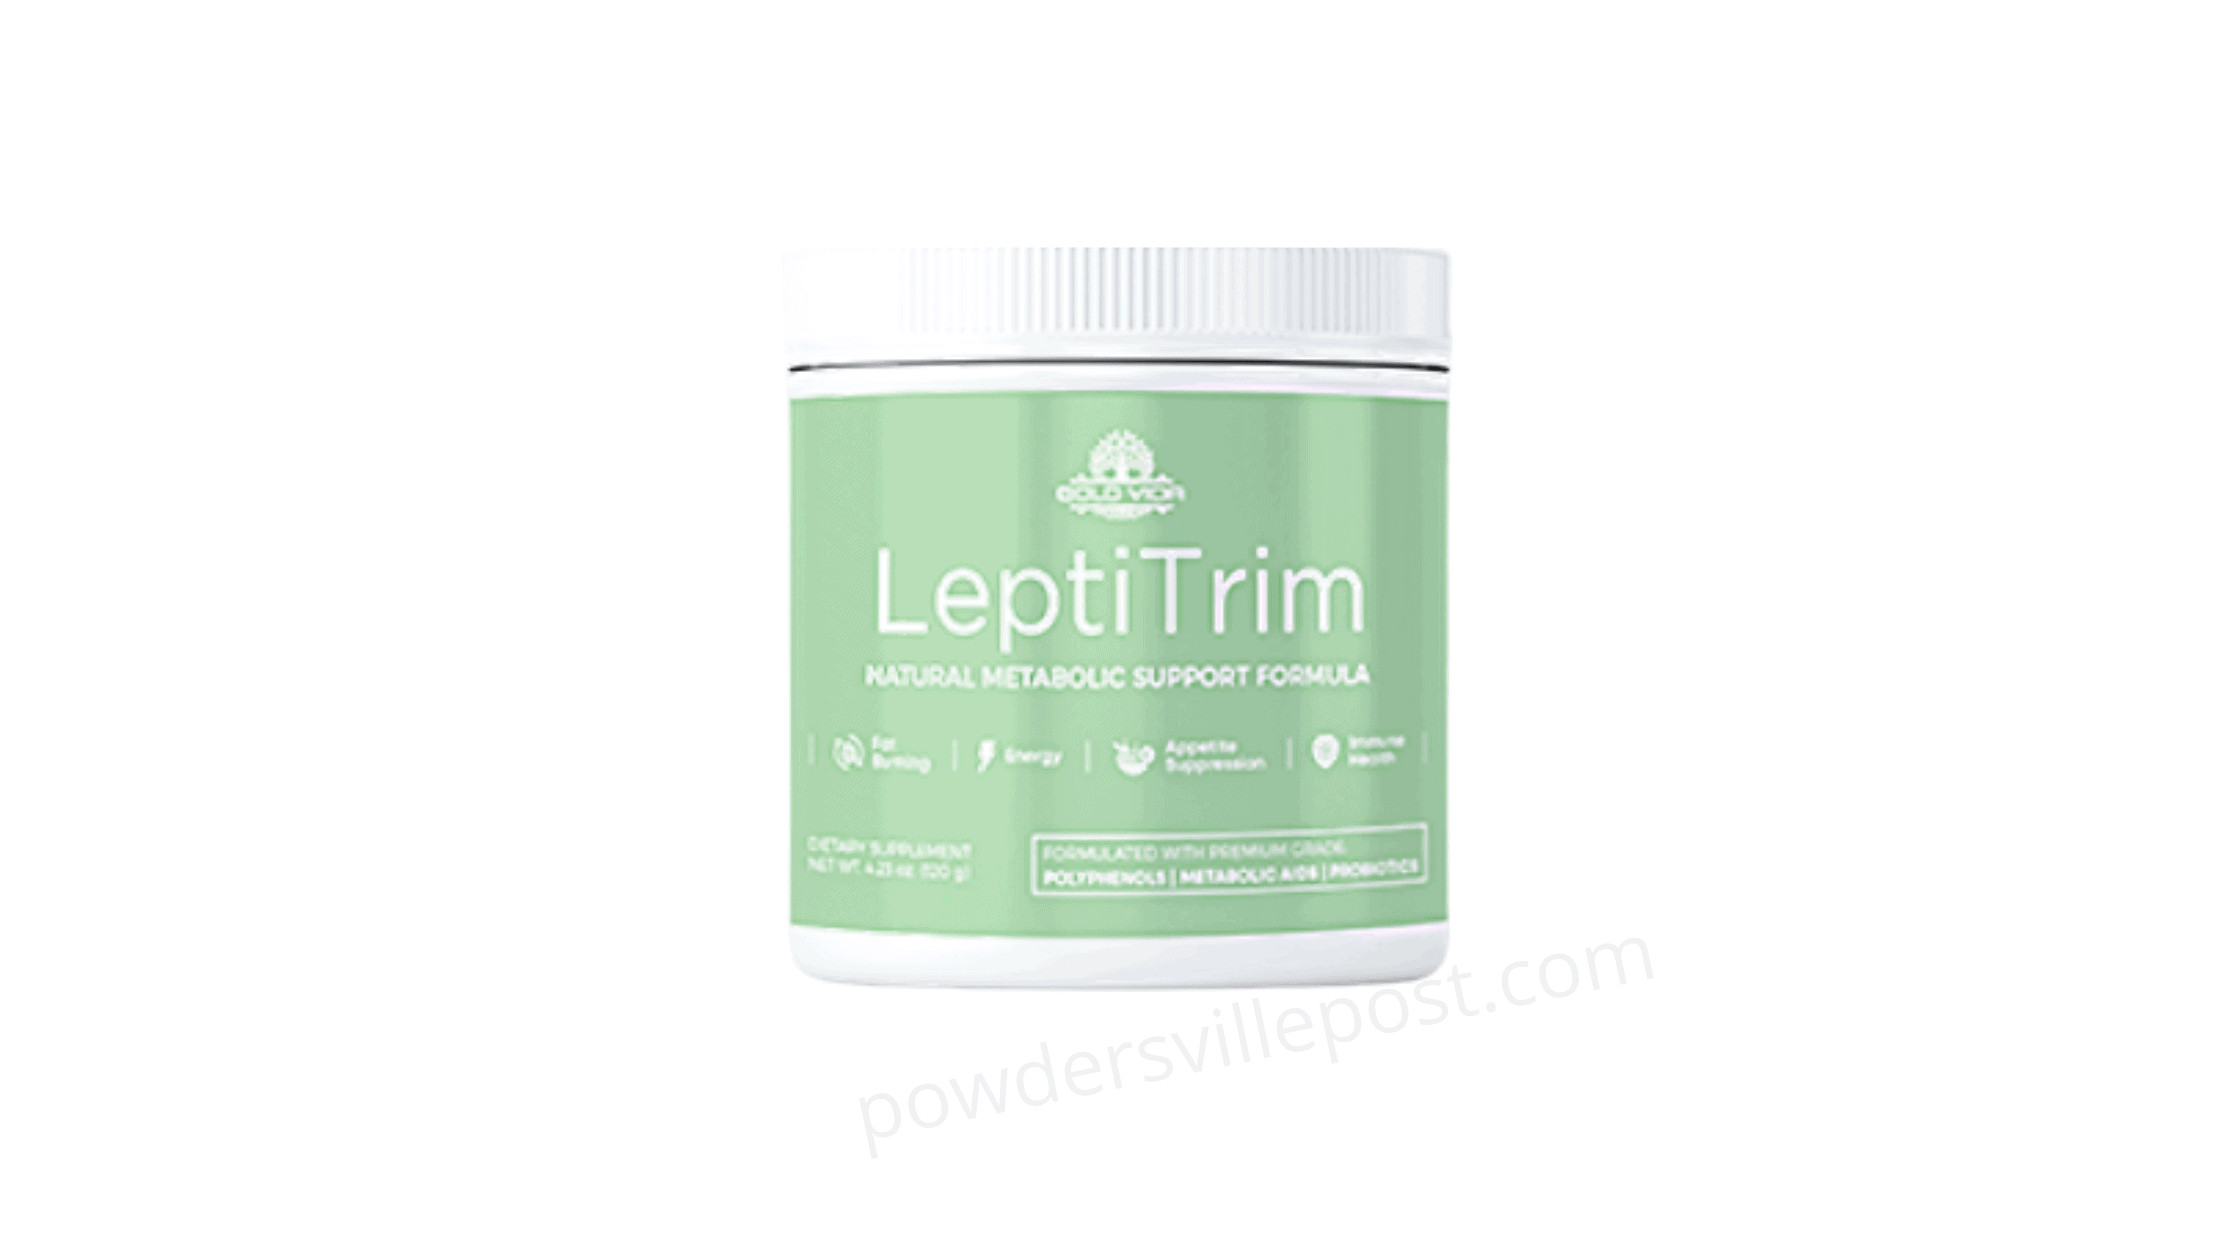 LeptiTrim Review